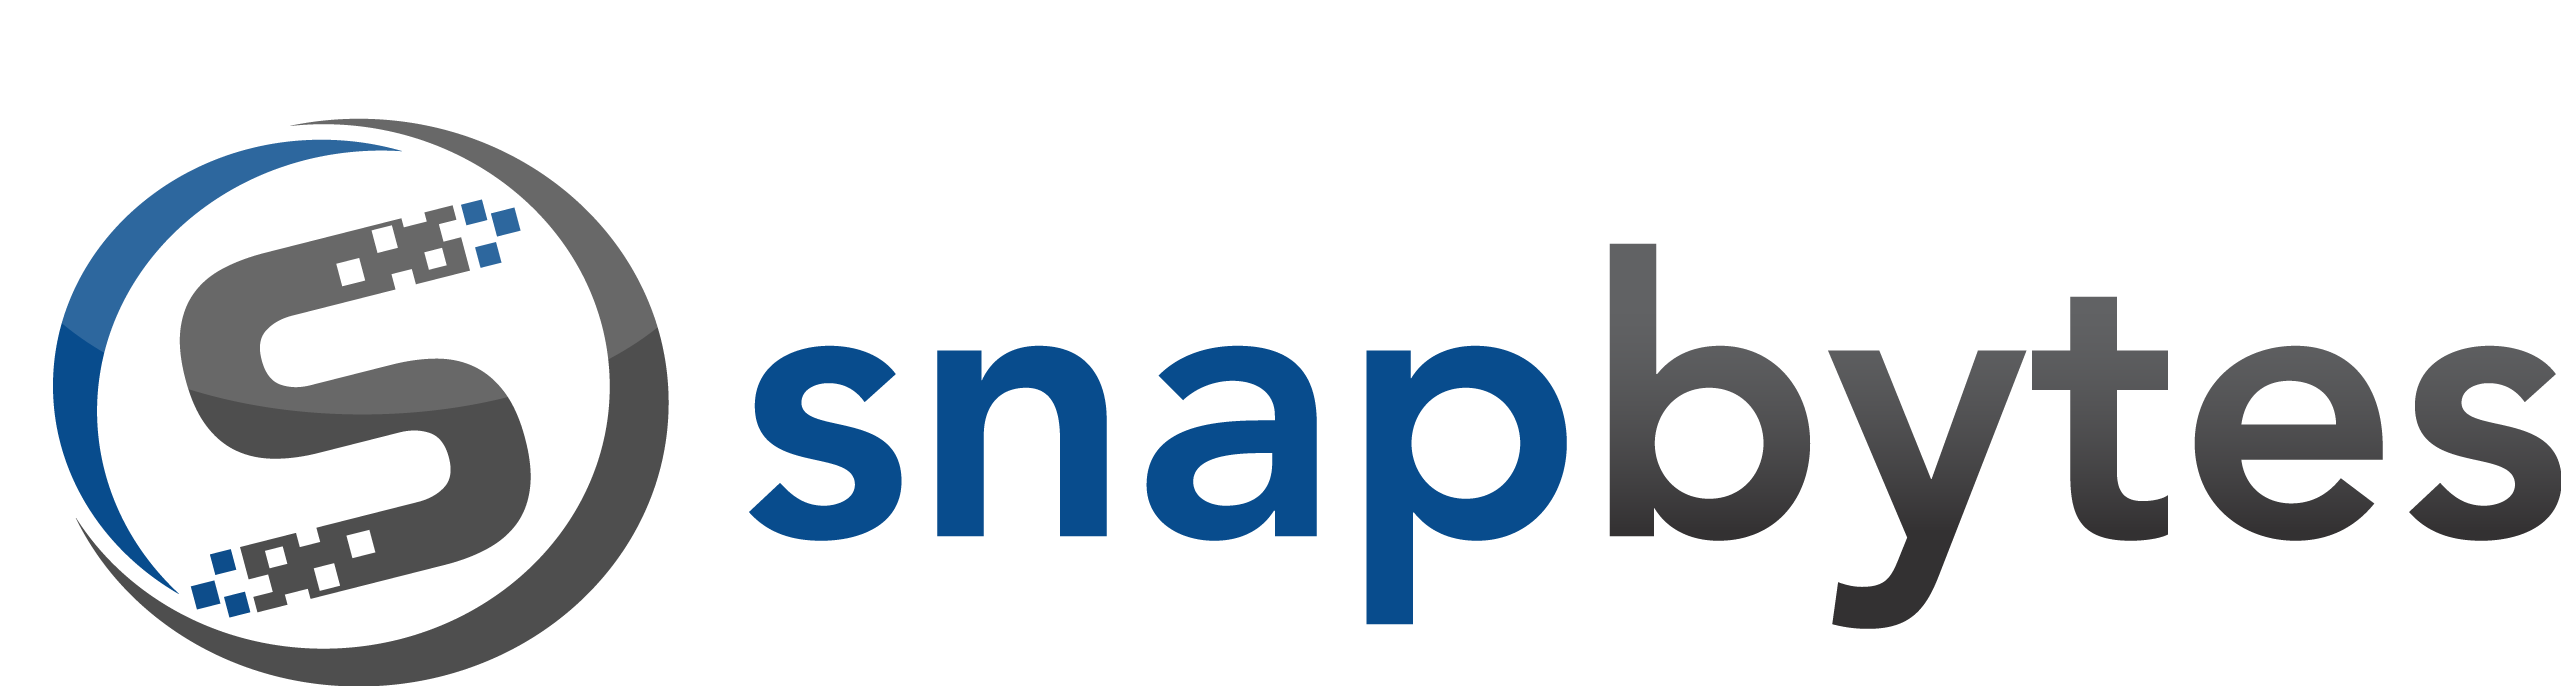 SnapBytes logo